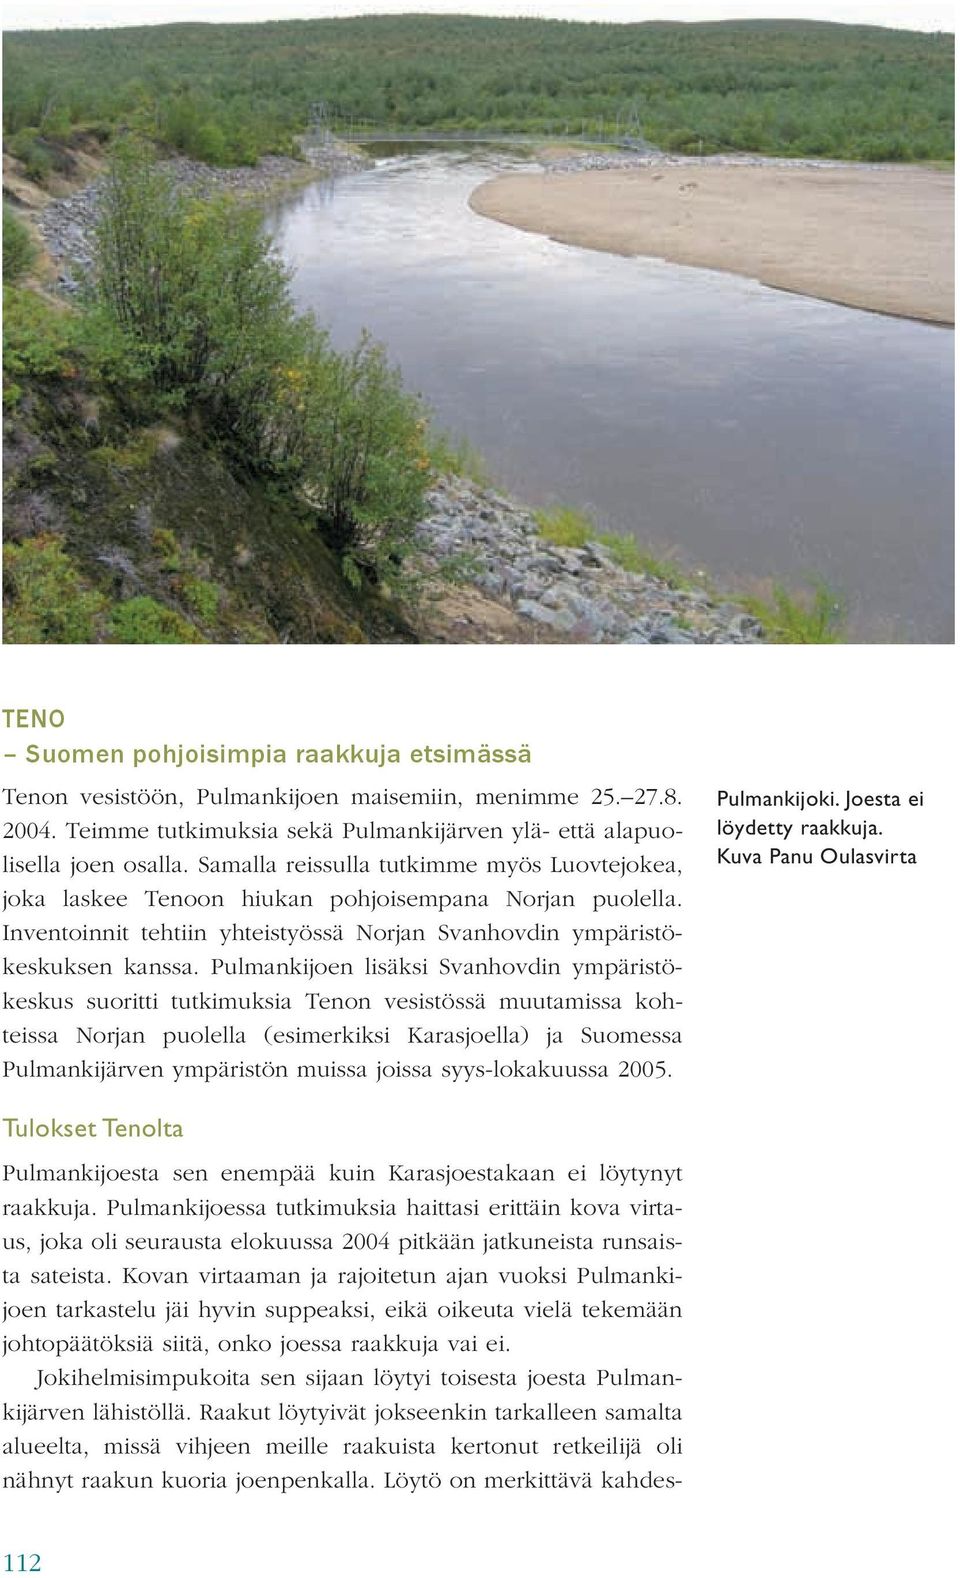 Pulmankijoen lisäksi Svanhovdin ympäristökeskus suoritti tutkimuksia Tenon vesistössä muutamissa kohteissa Norjan puolella (esimerkiksi Karasjoella) ja Suomessa Pulmankijärven ympäristön muissa